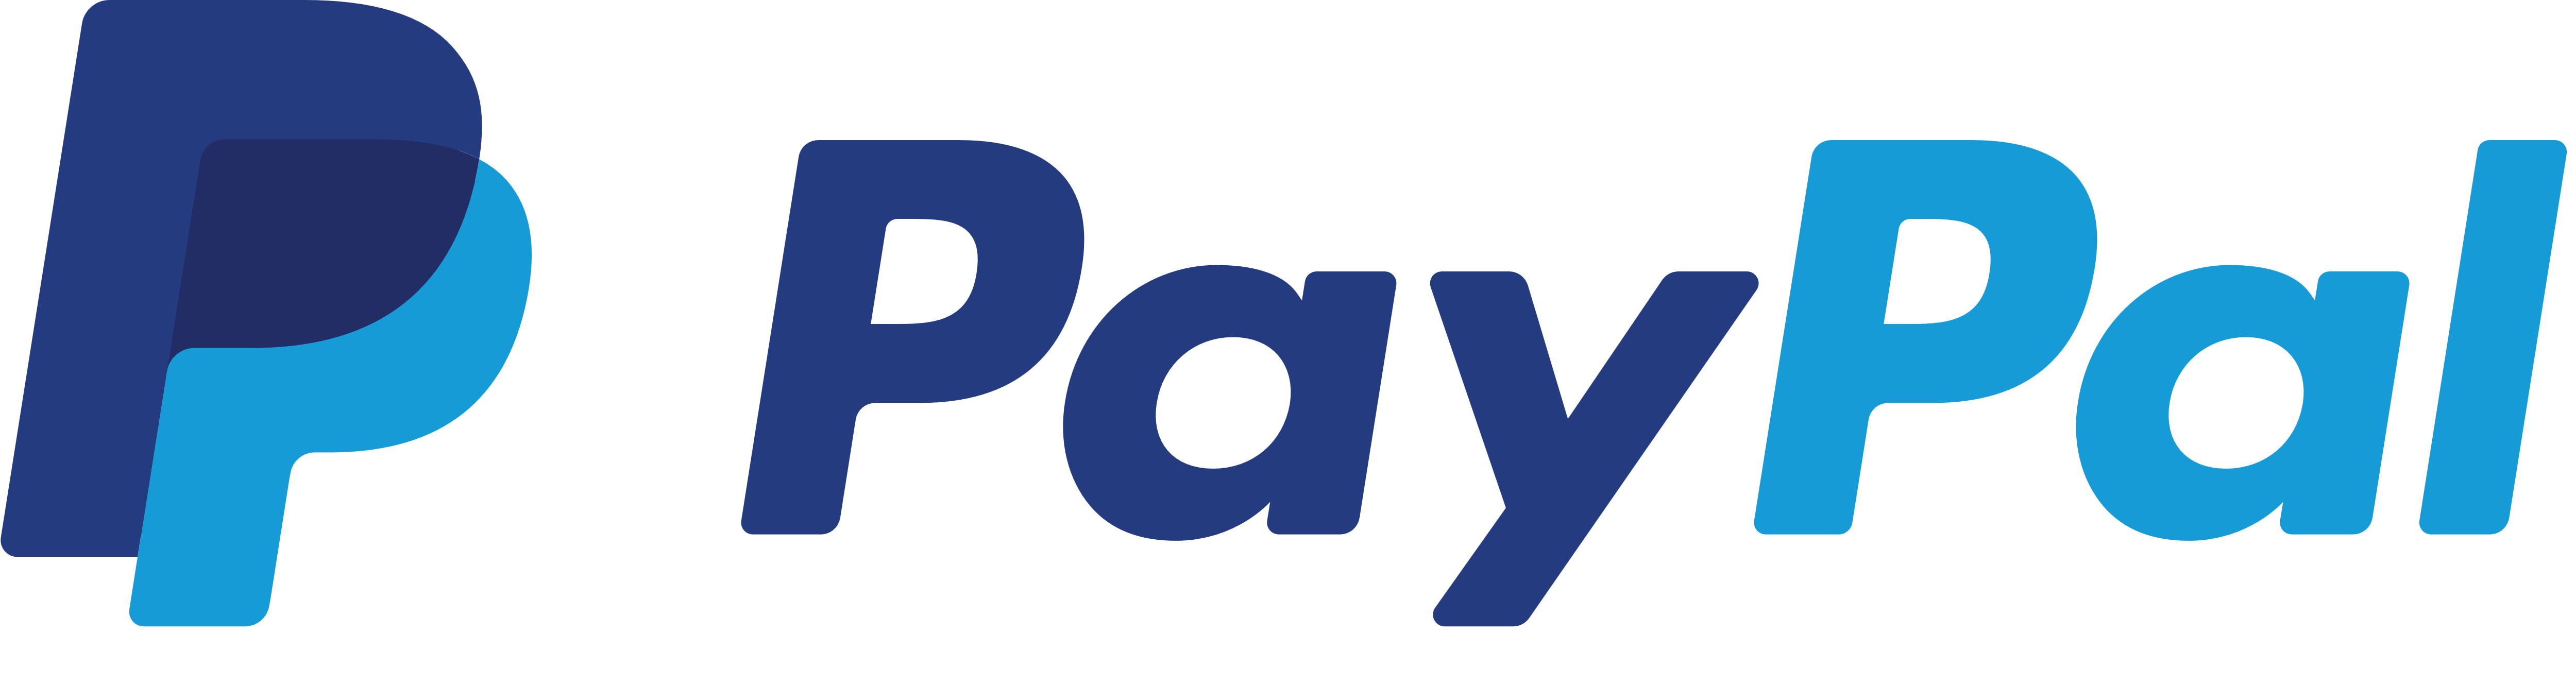 PayPal logo, logotype, emblem